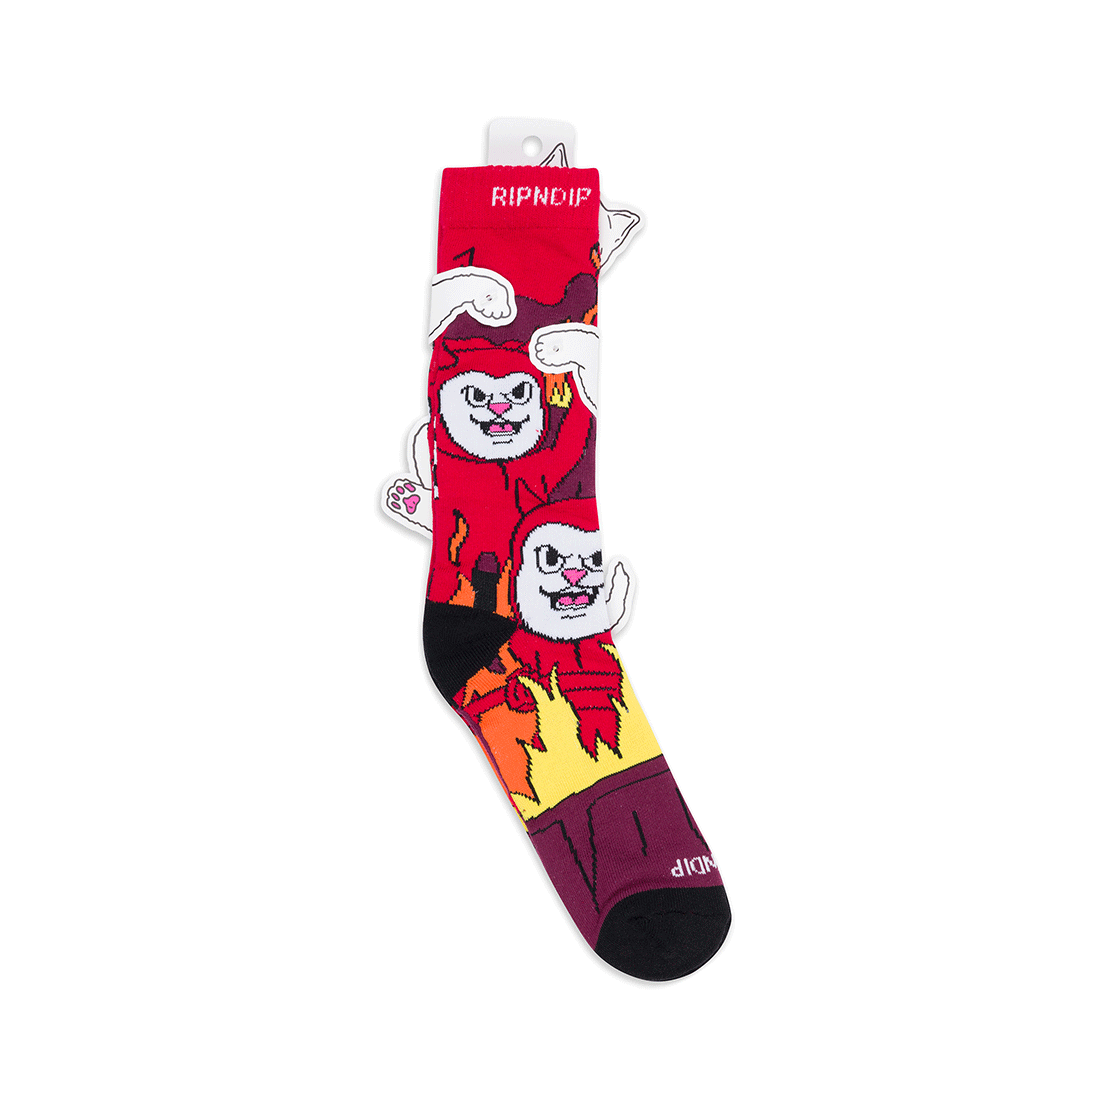 Rip n dip socks - Heaven On Earth -Red